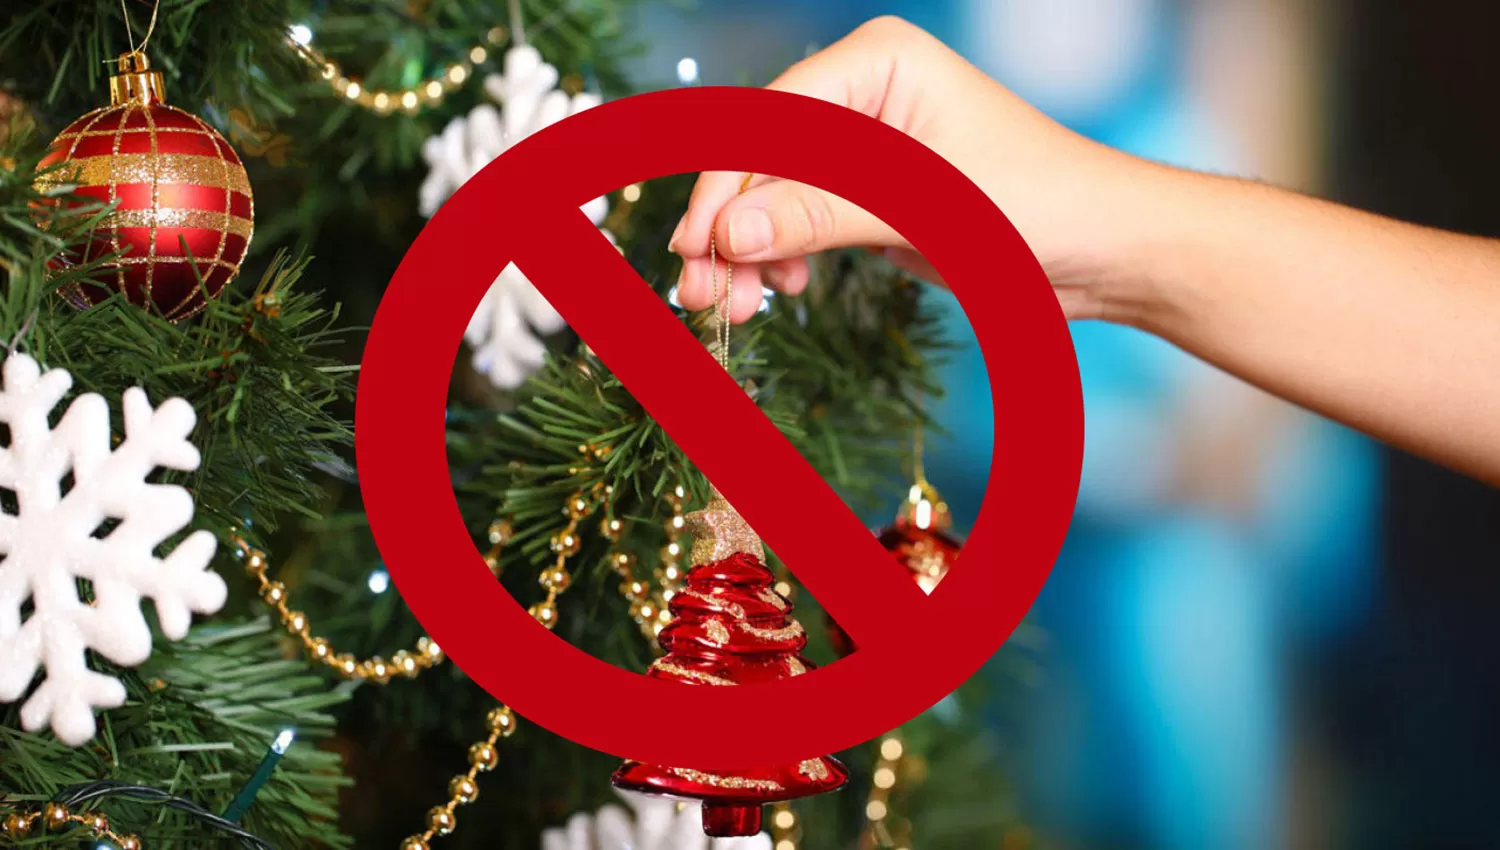 En Tayikistán (Asia Central), por ejemplo, están prohibidos los árboles de Navidad, el intercambio de regalos y los disfraces de Papá Noel.